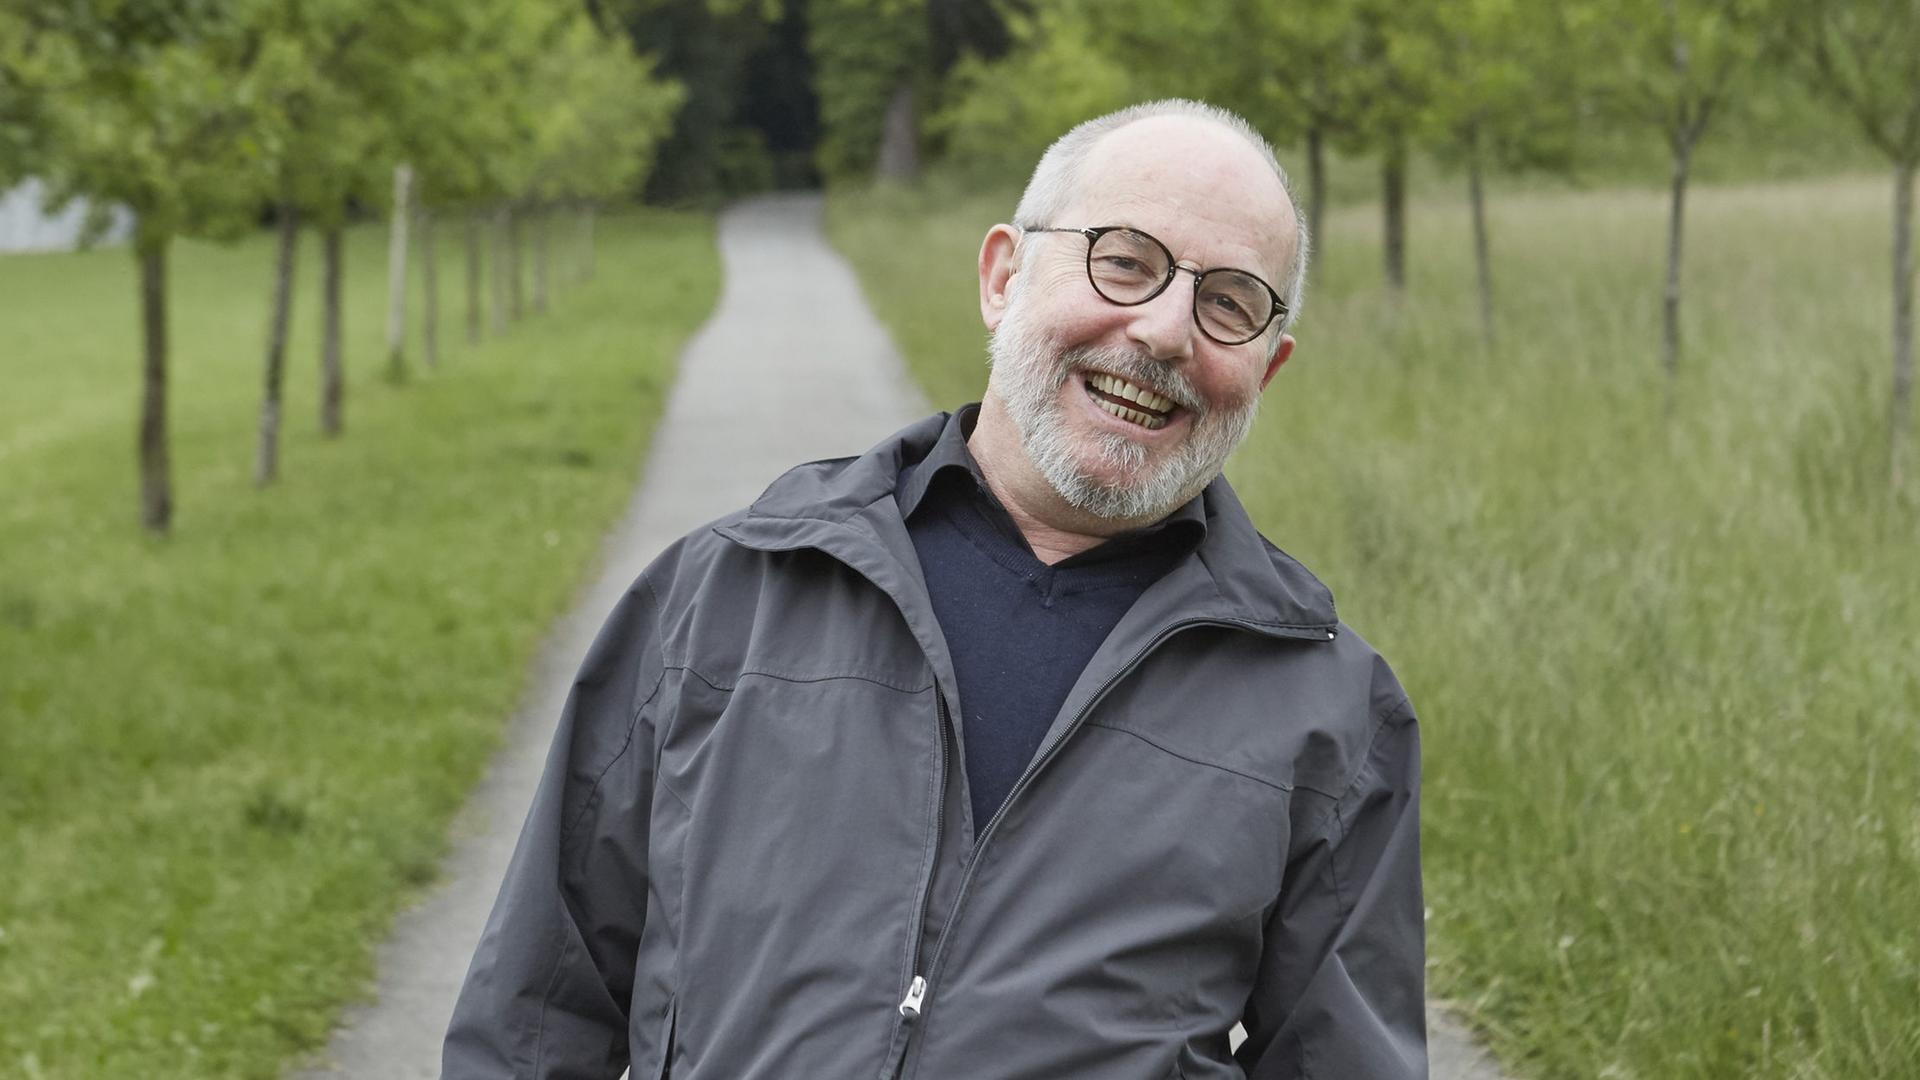 Der Schweizer Schriftsteller Thomas Hürlimann steht auf einem von Bäumen gesäumten schmalen Weg und lacht. Rechts und links sind grüne Wiesen zu sehen. Hürlimann trägt eine graue Halbglatze und Brille.